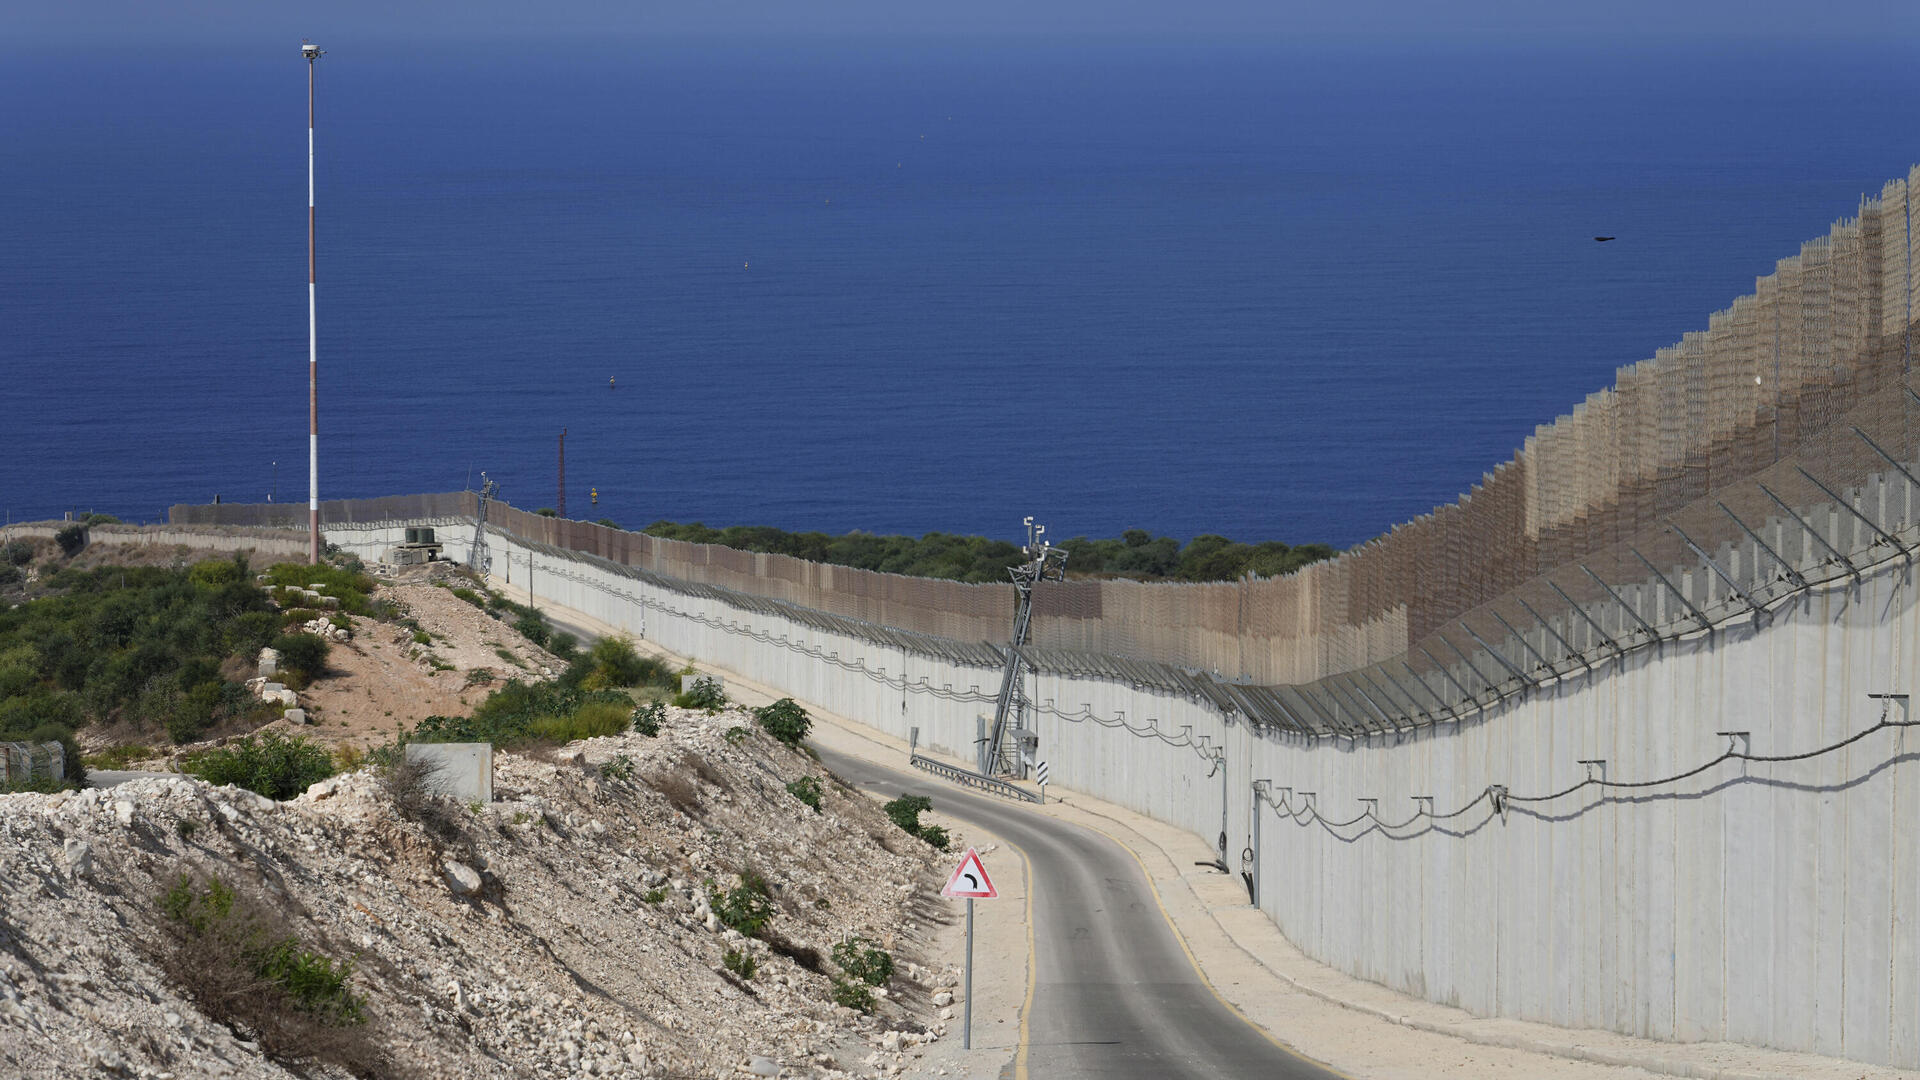 גדר הגבול בין ישראל ל לבנון